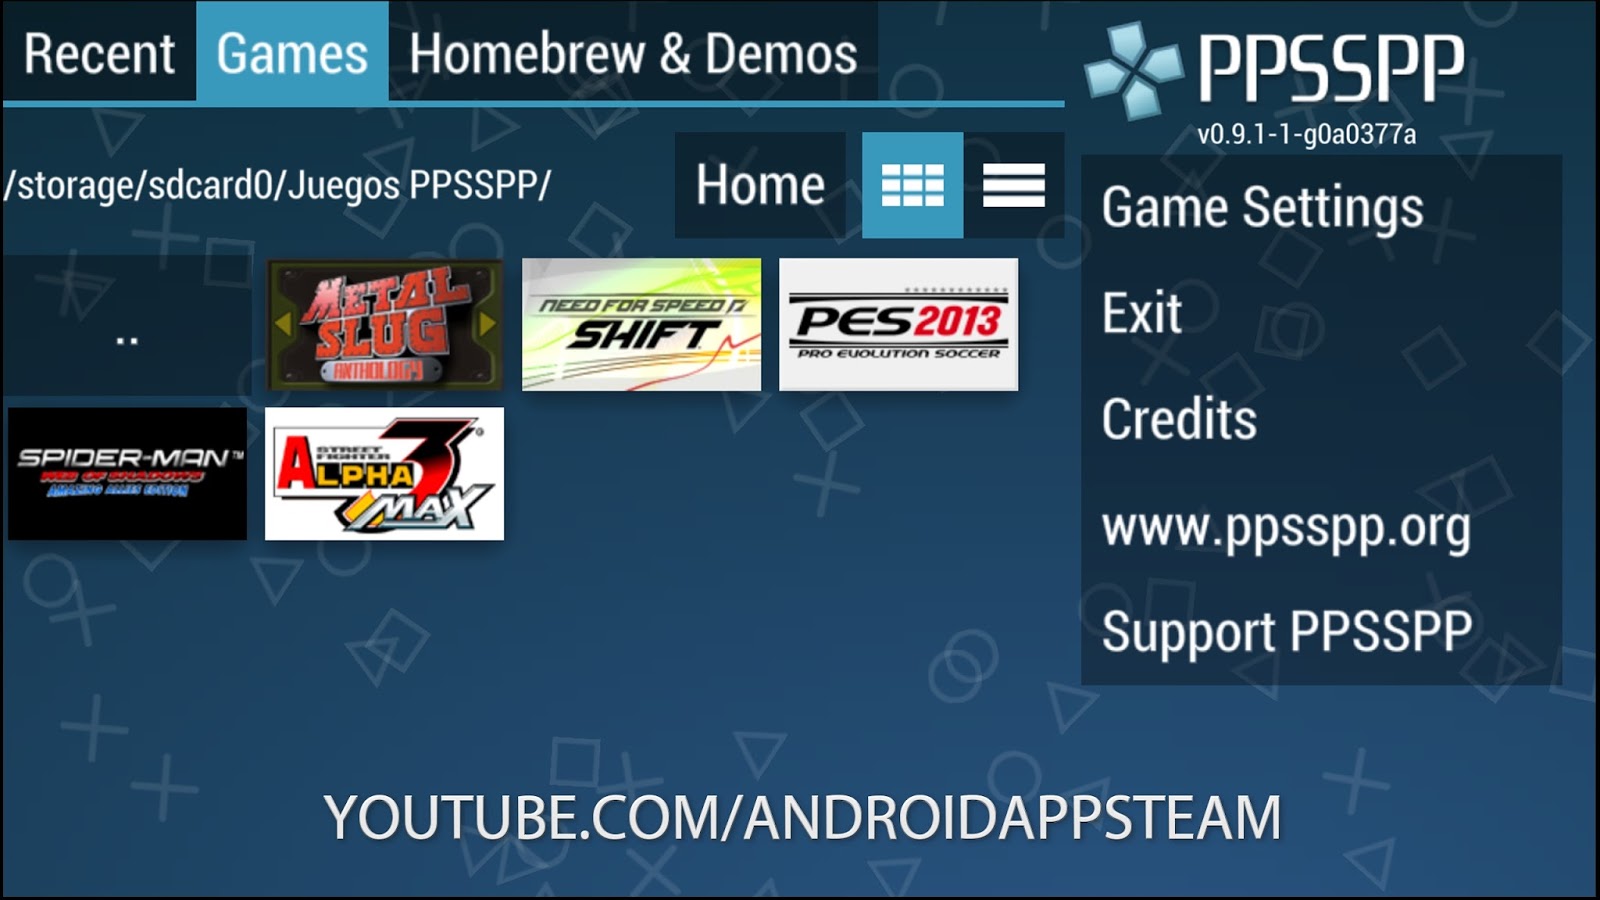 Juegos Para Ppsspp Apk - 6 juegos para ppsspp y donde descargar (todos los link en ...